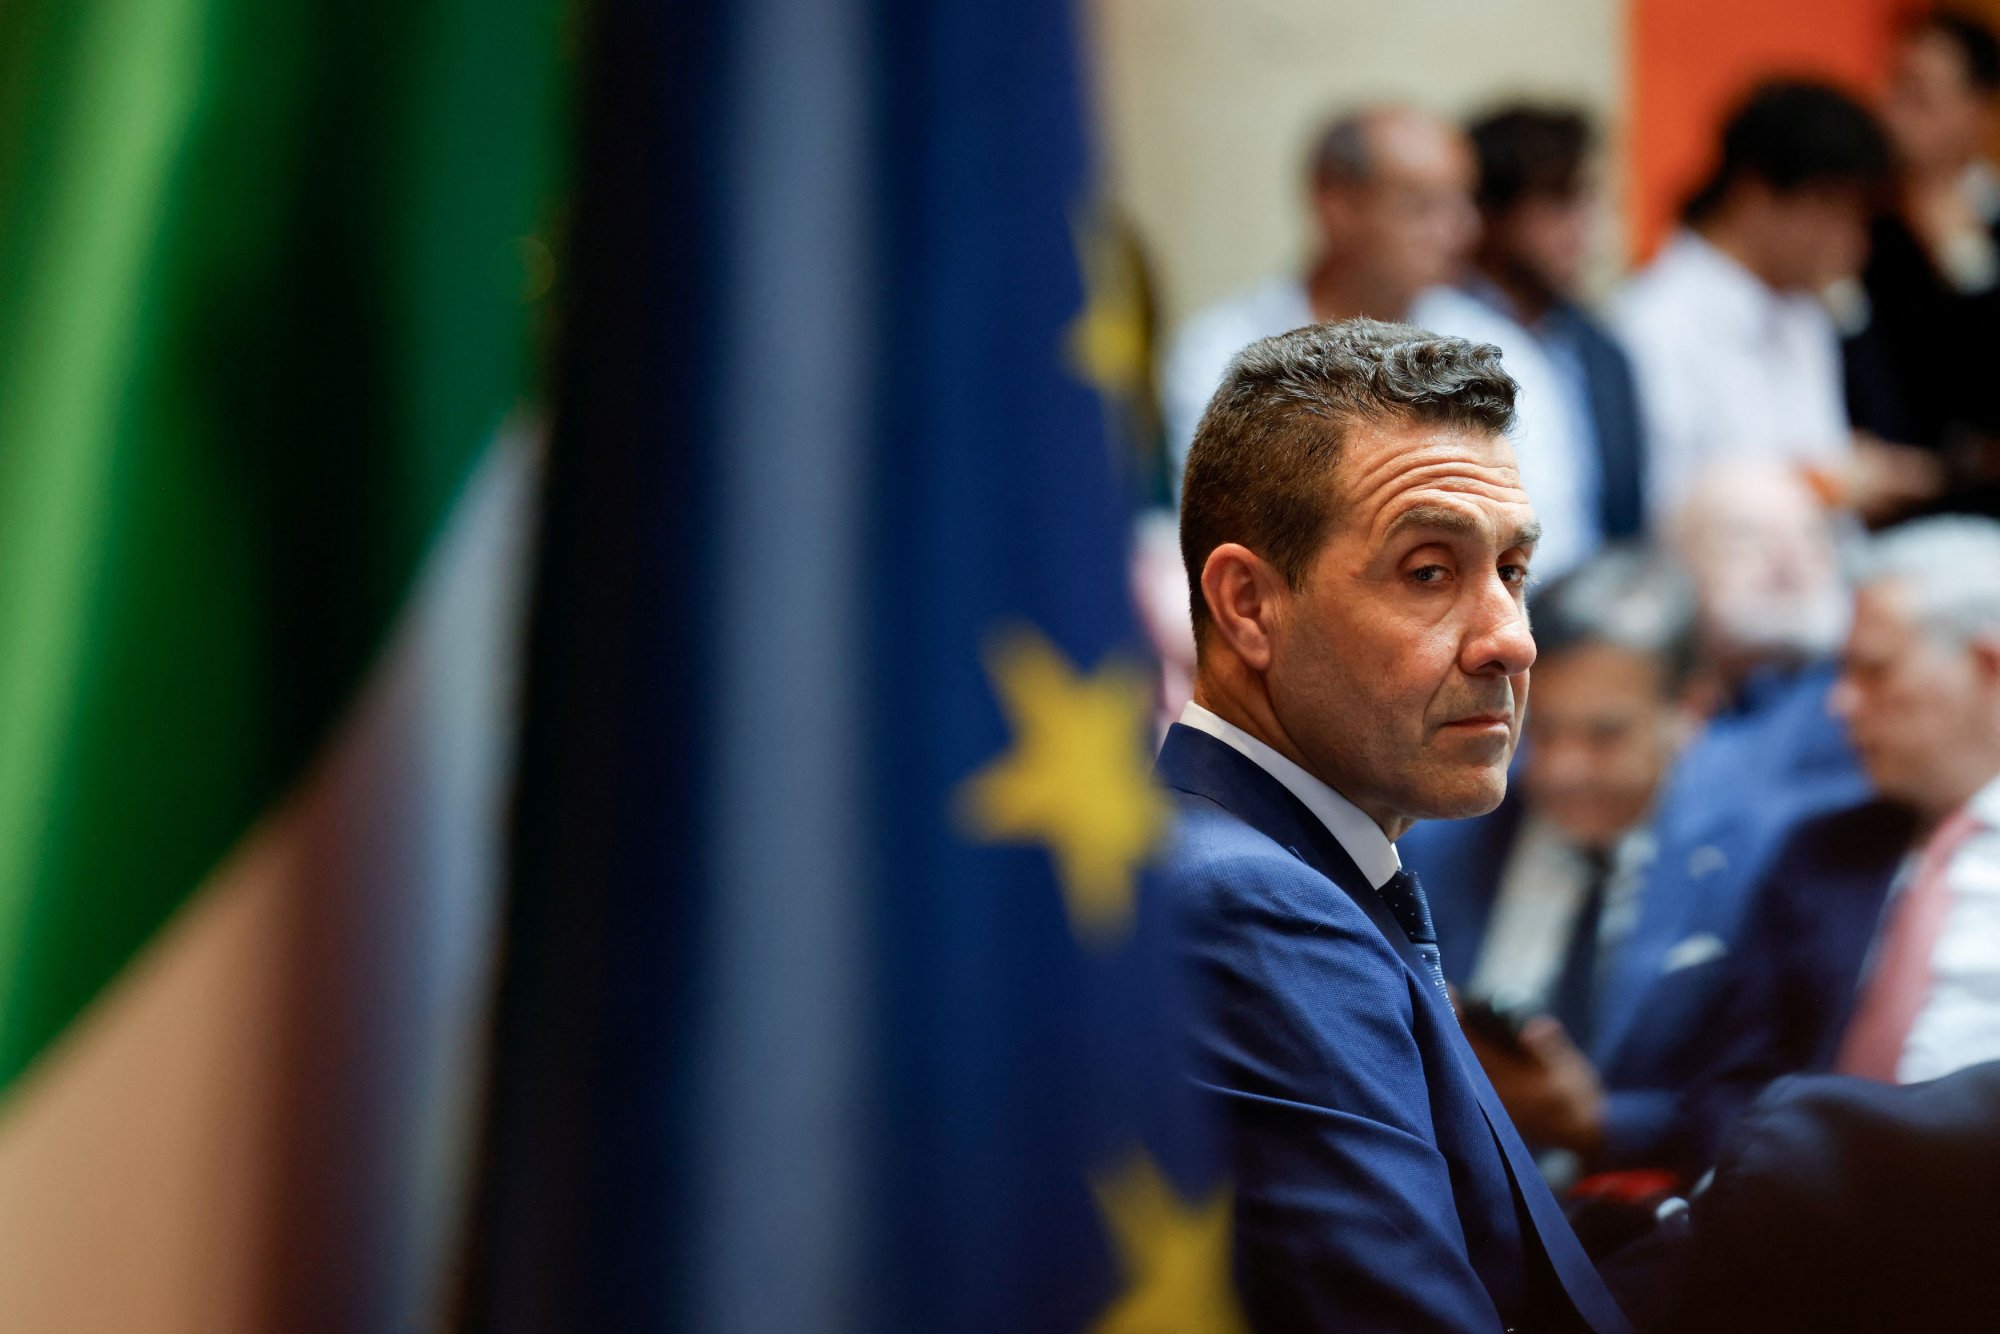 Ρομπέρτο Βανάτσι – Από στρατηγός, υποψήφιος ευρωβουλευτής και νέος «εκλεκτός» της ακροδεξιάς στην Ιταλία